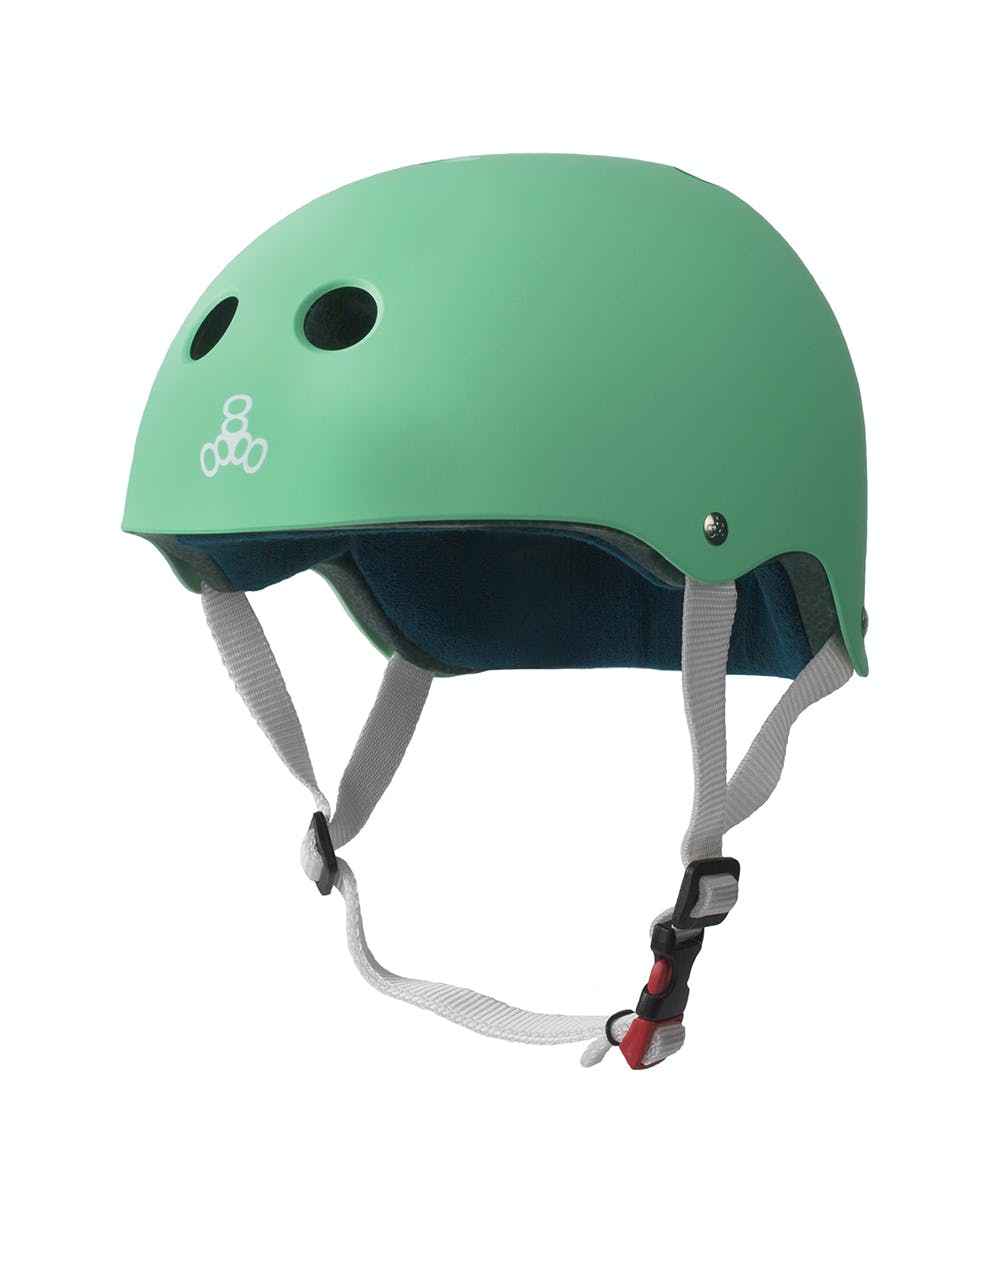 Triple 8 Sweatsaver Certified Rubber Helmet - Mint